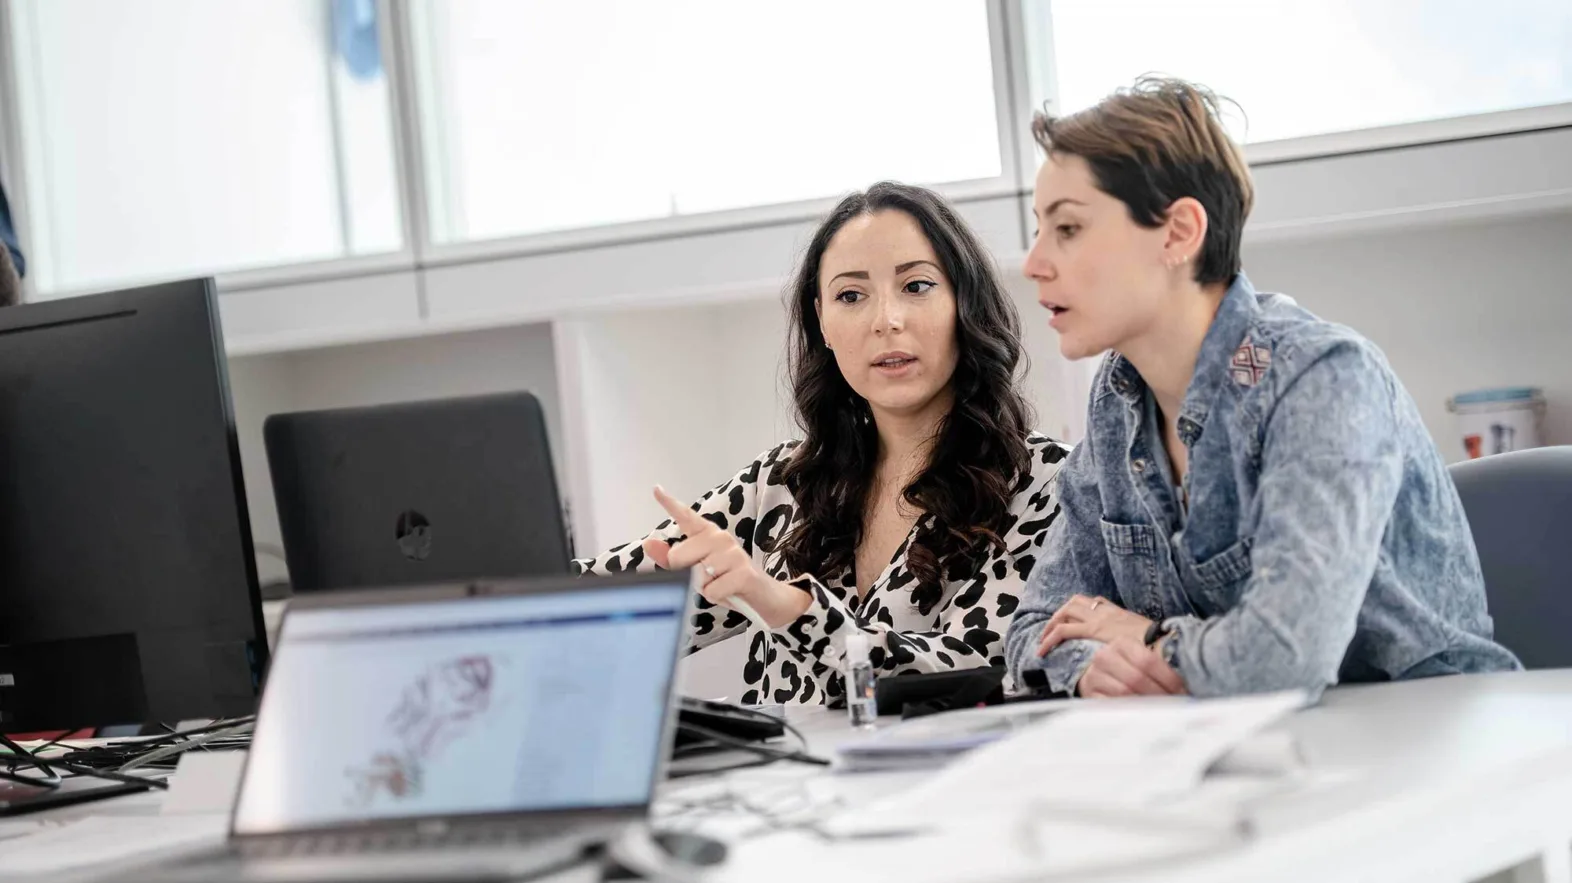 Situation de travail: deux femmes discutent devant un écran d'ordinateur